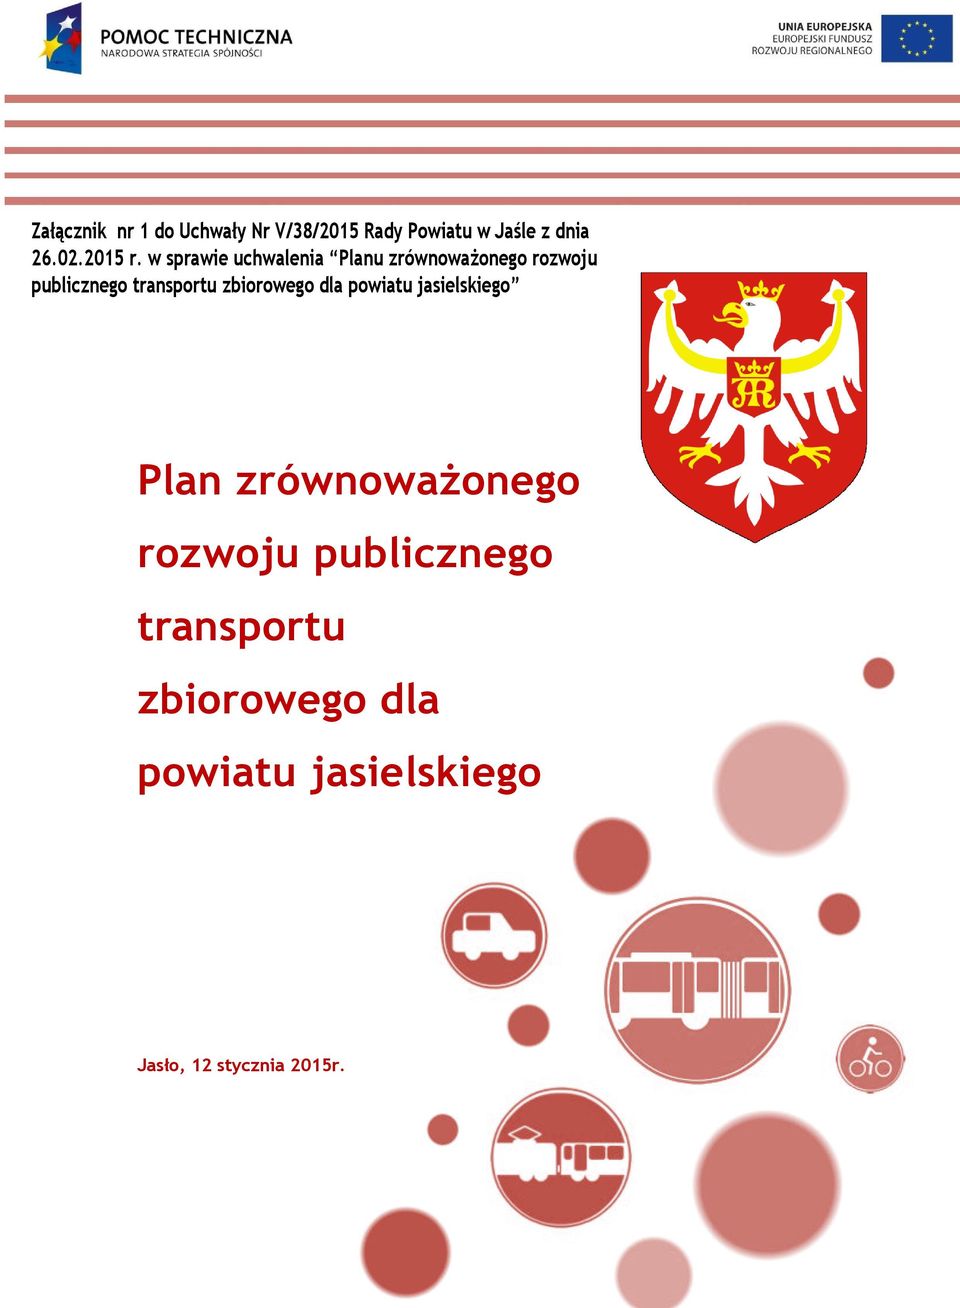 w sprawie uchwalenia Planu zrównoważonego rozwoju publicznego transportu